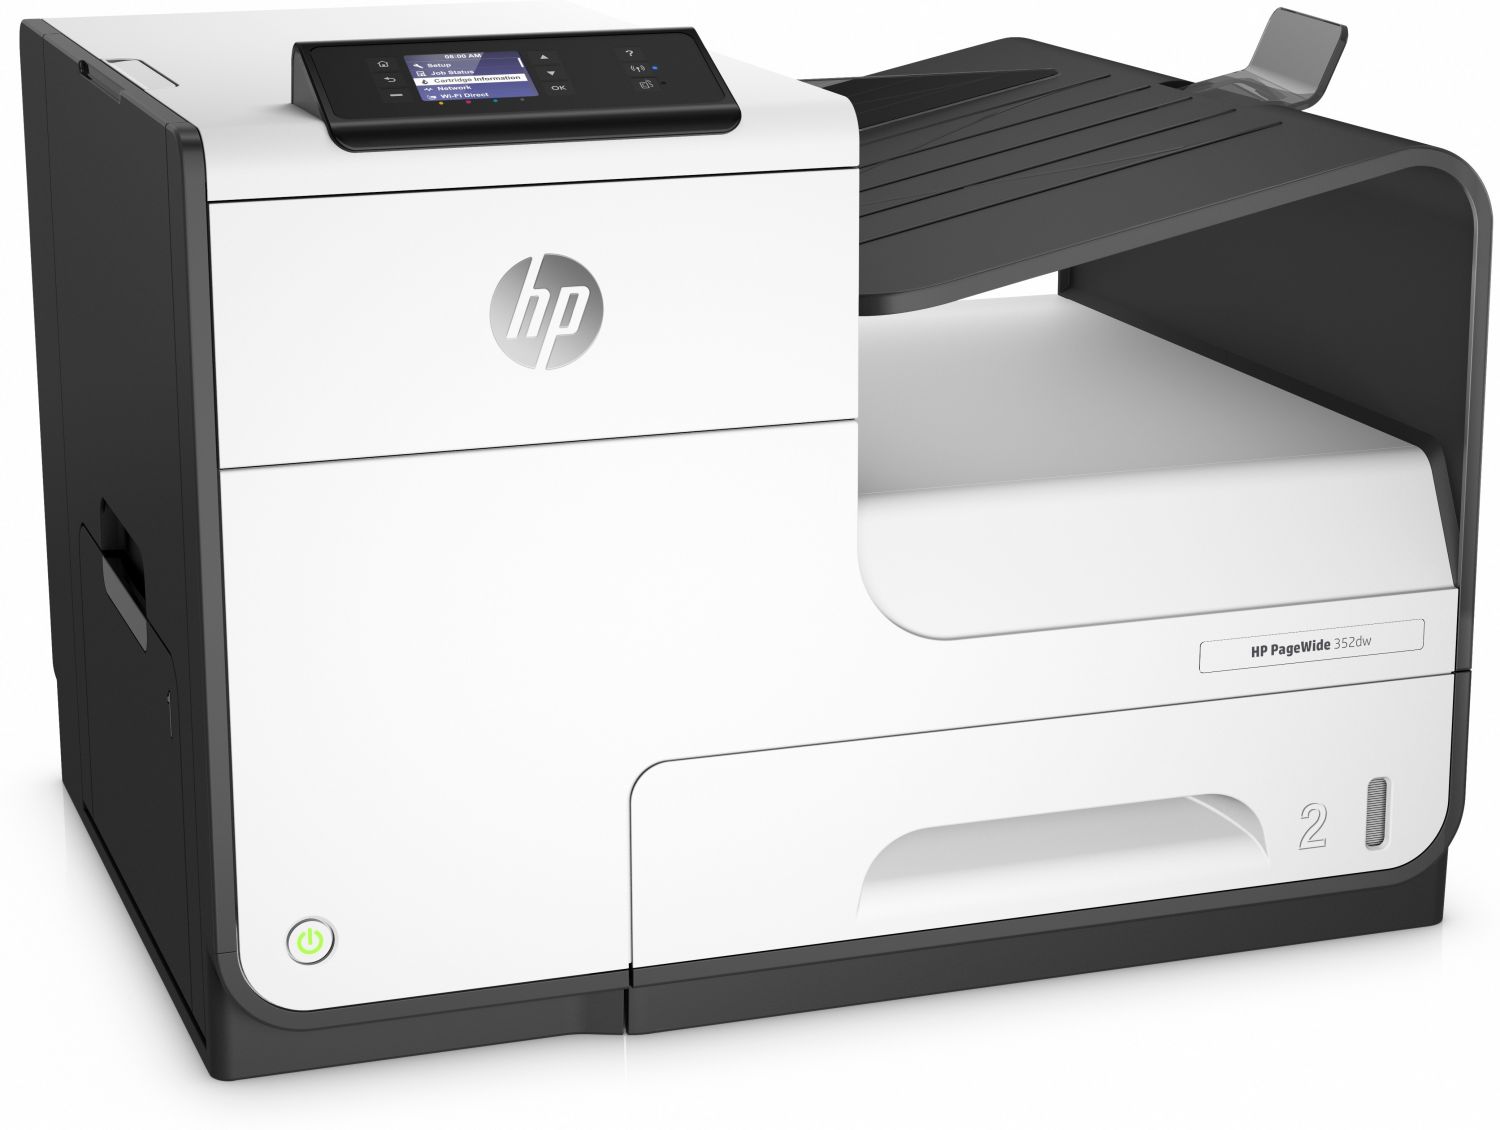 J6U57B - Impresora de inyeccin de tinta HP PageWide 352dw impresora de  de  Color 2400 x 1200 DPI A4 Wifi. Cartuchos 913A BK/C/M/Y